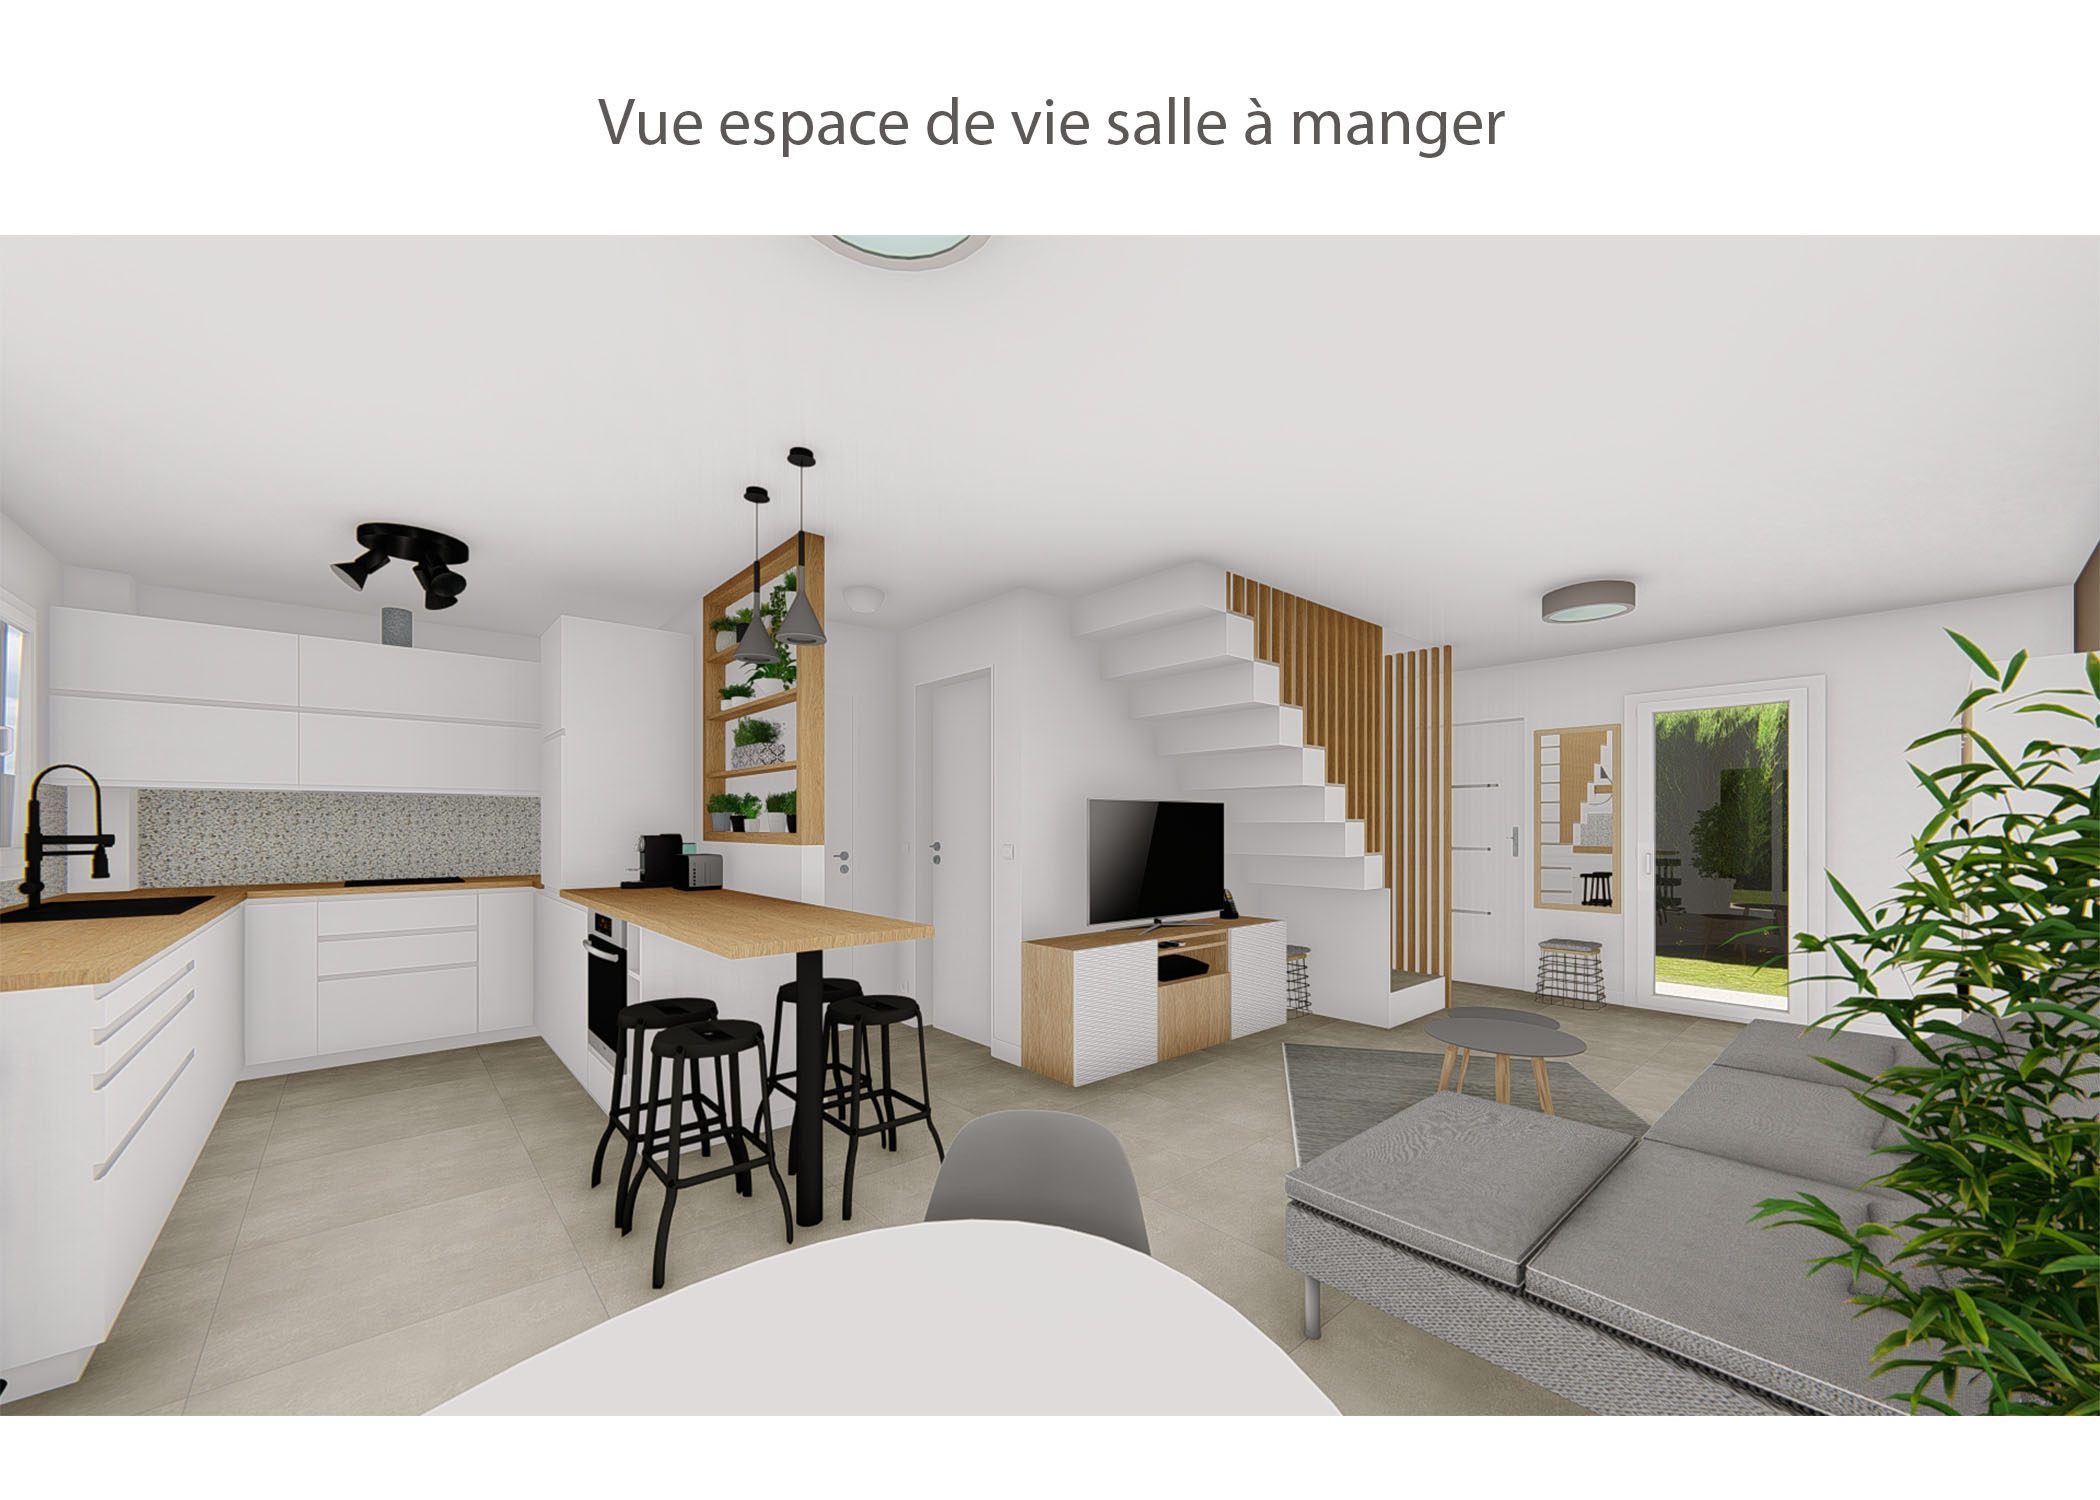 amenagement-decoration-espace de vie maison meyreuil-vue cote salle a manger-dekho design